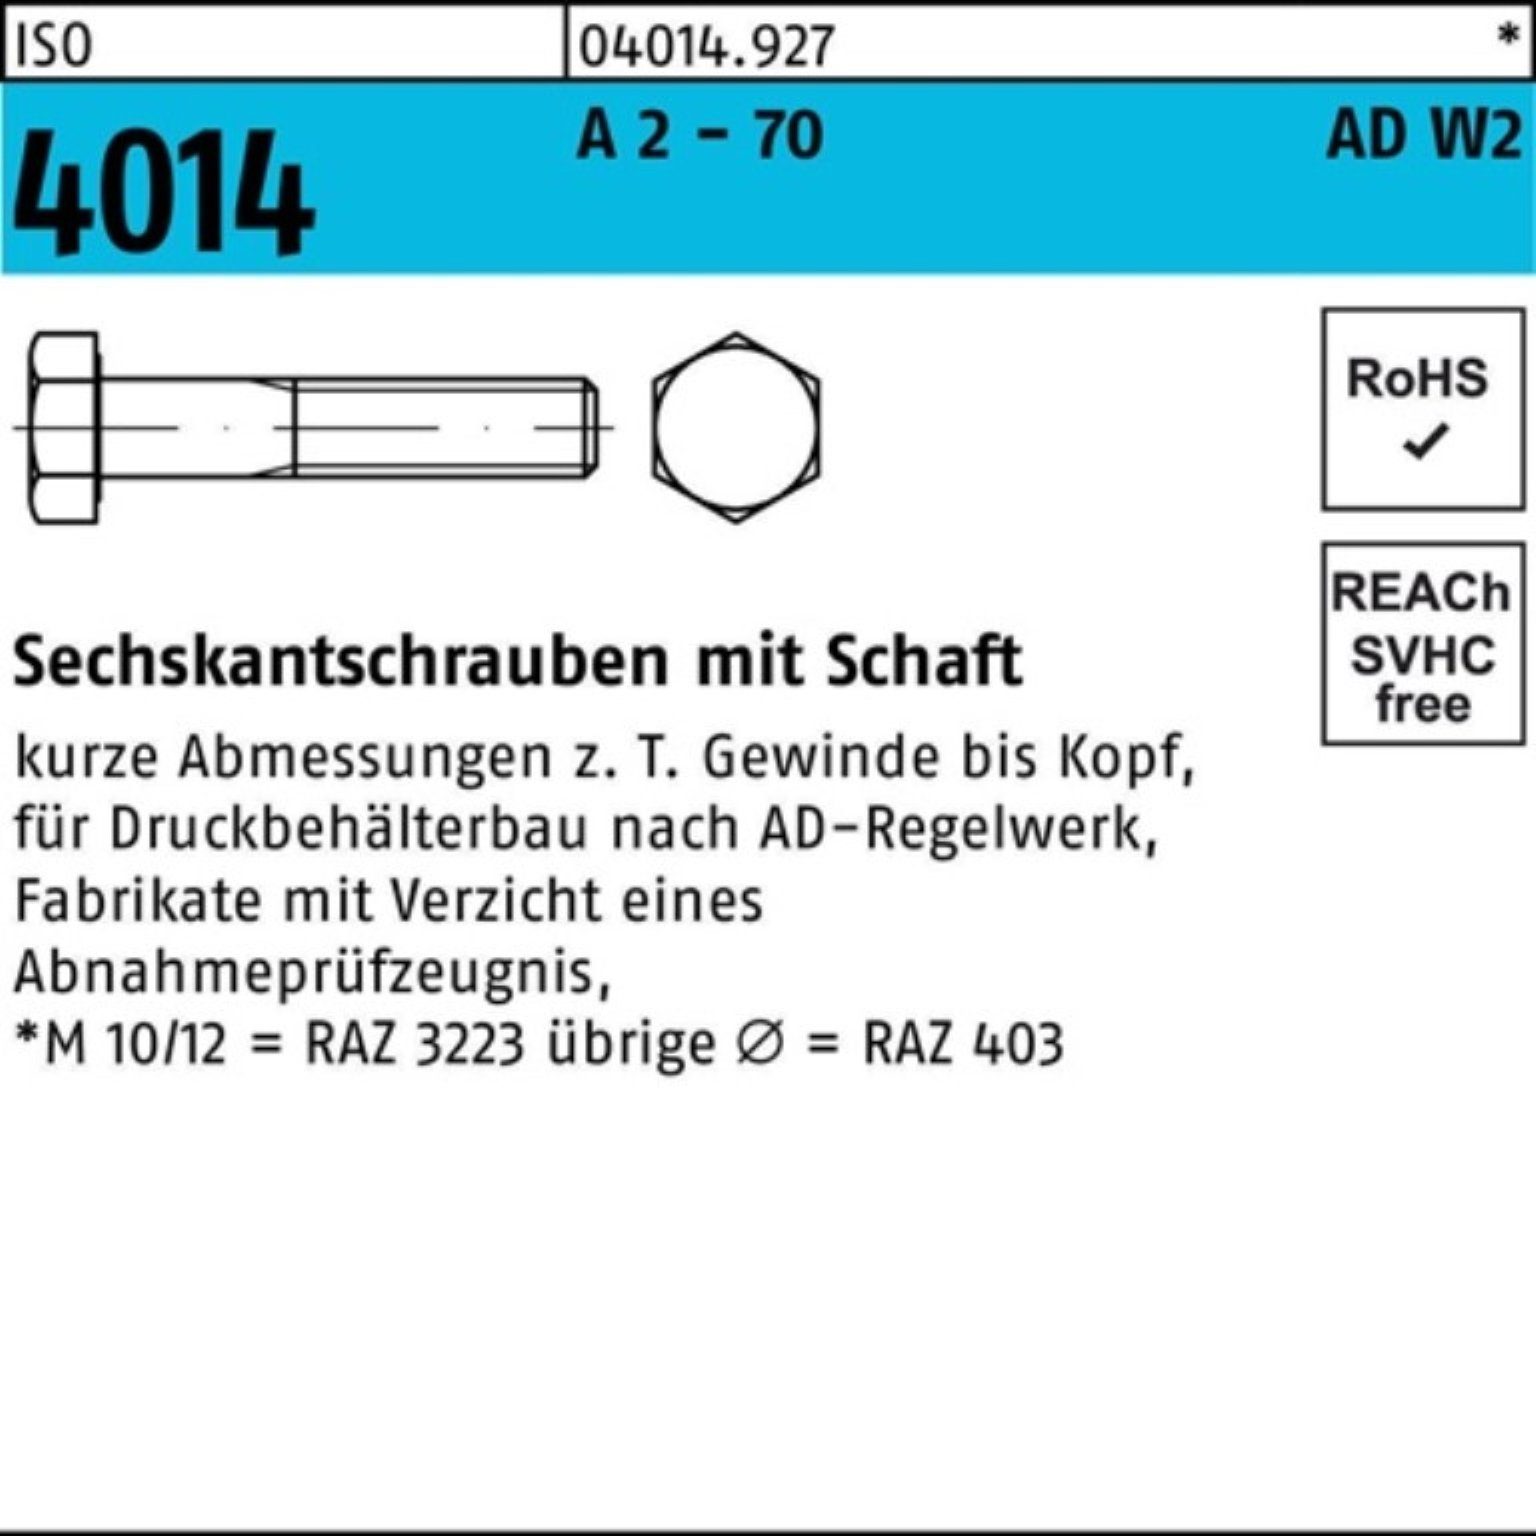 Sechskantschraube 2 4014 Sechskantschraube - Pack ISO 100er AD-W2 A Schaft 25 Bufab M20x 70 90